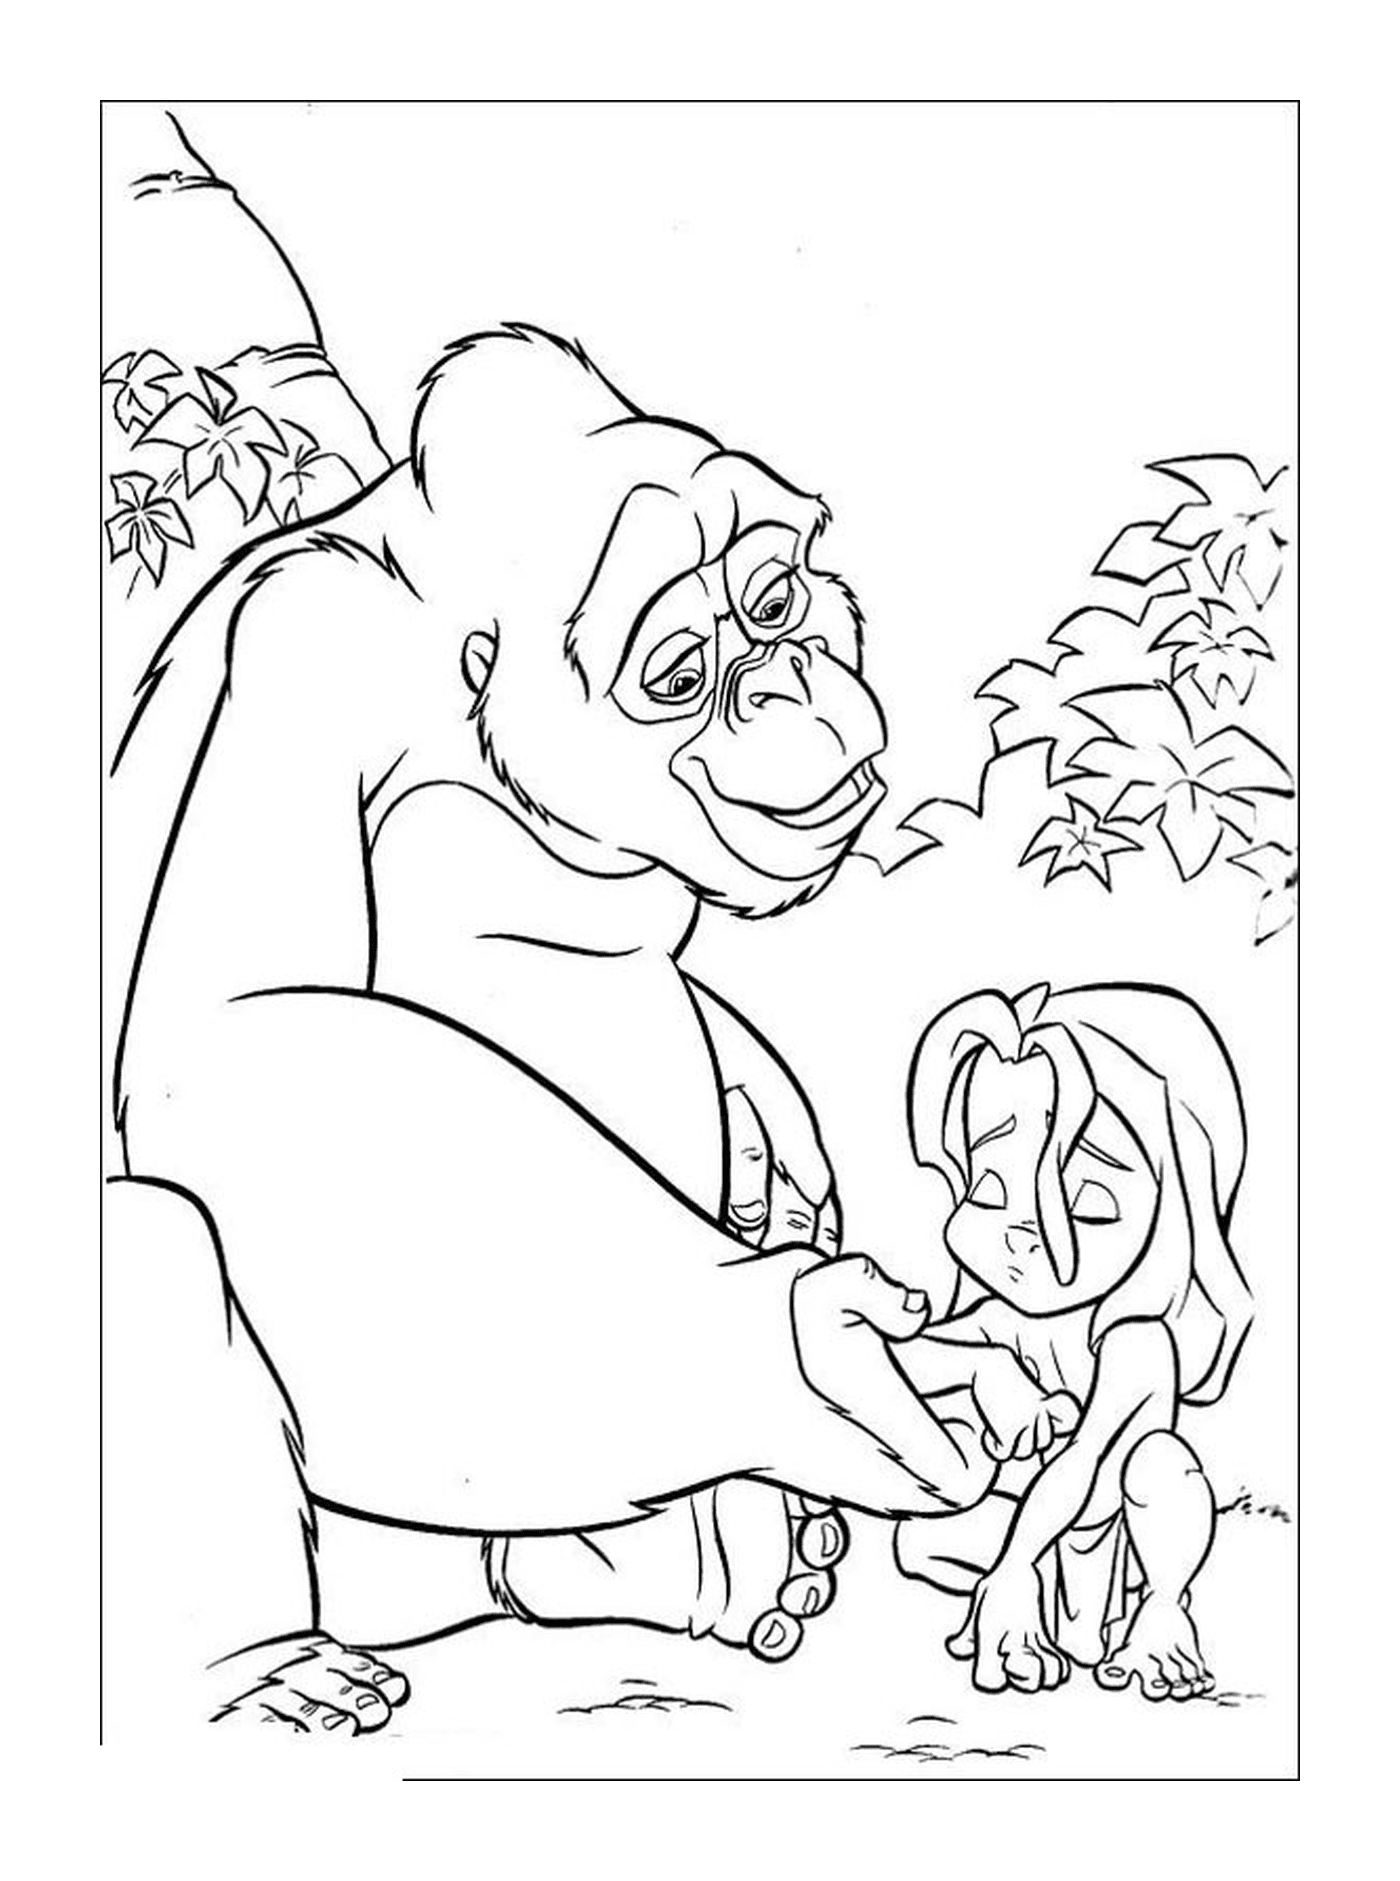  Gorila segurando uma menina em seus braços 